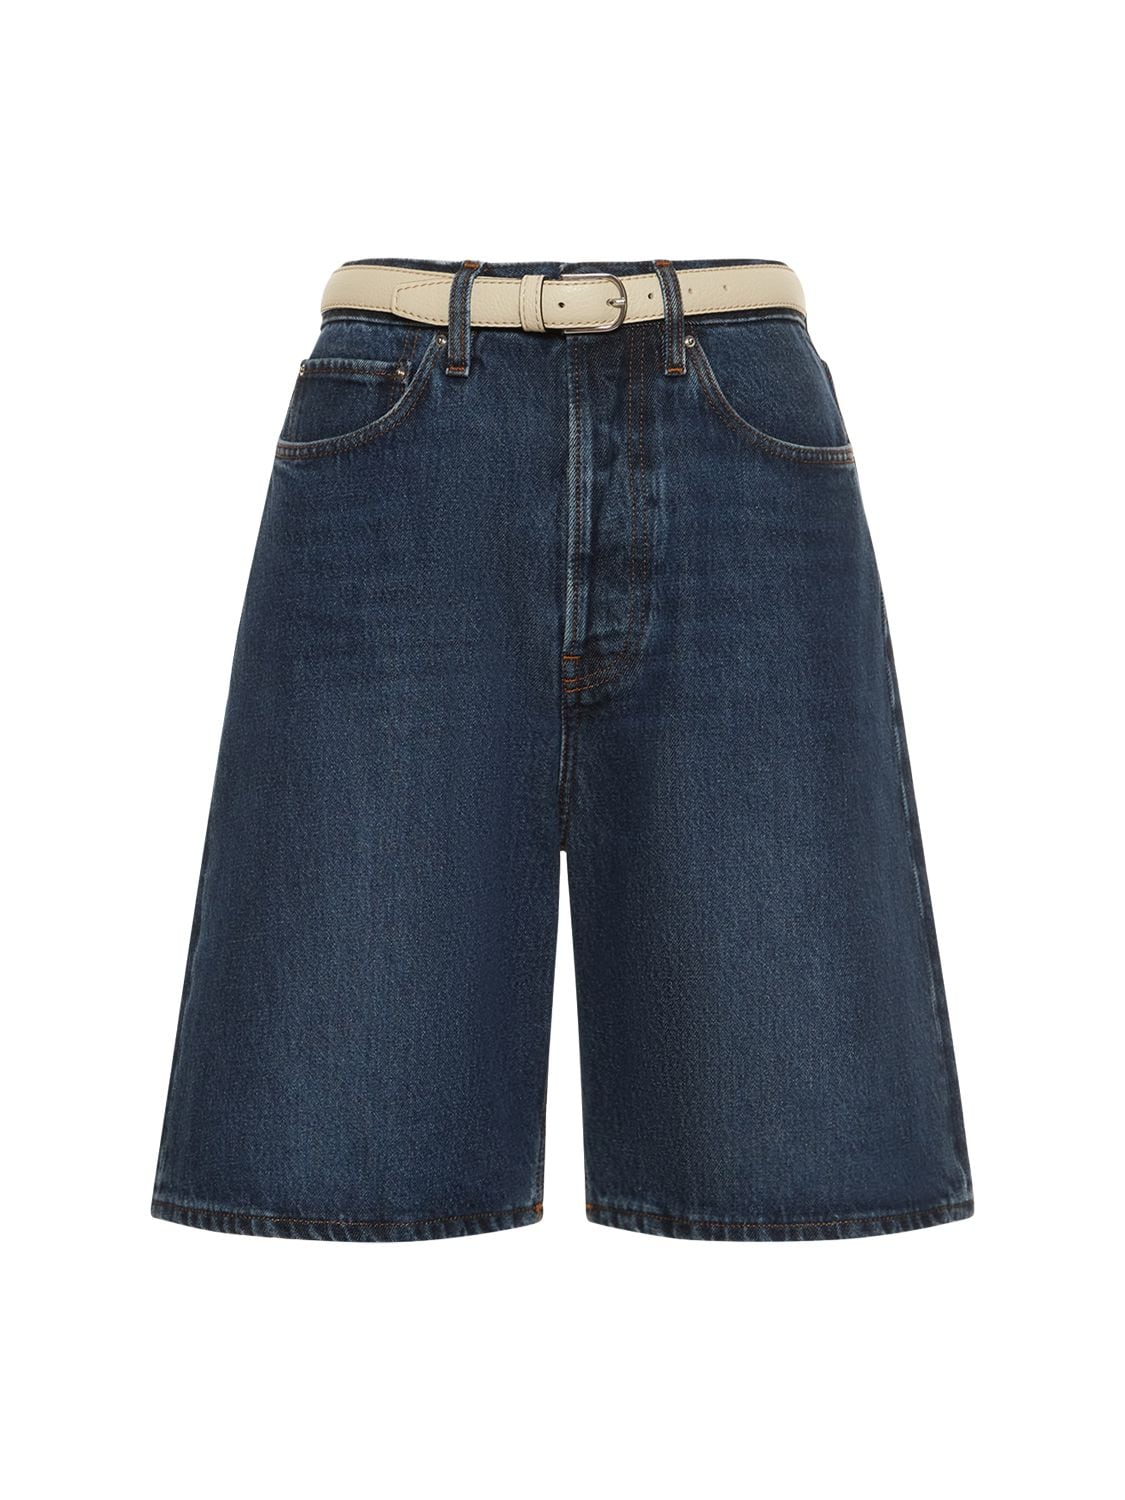 Totême Classic Denim Cotton Shorts In Blue